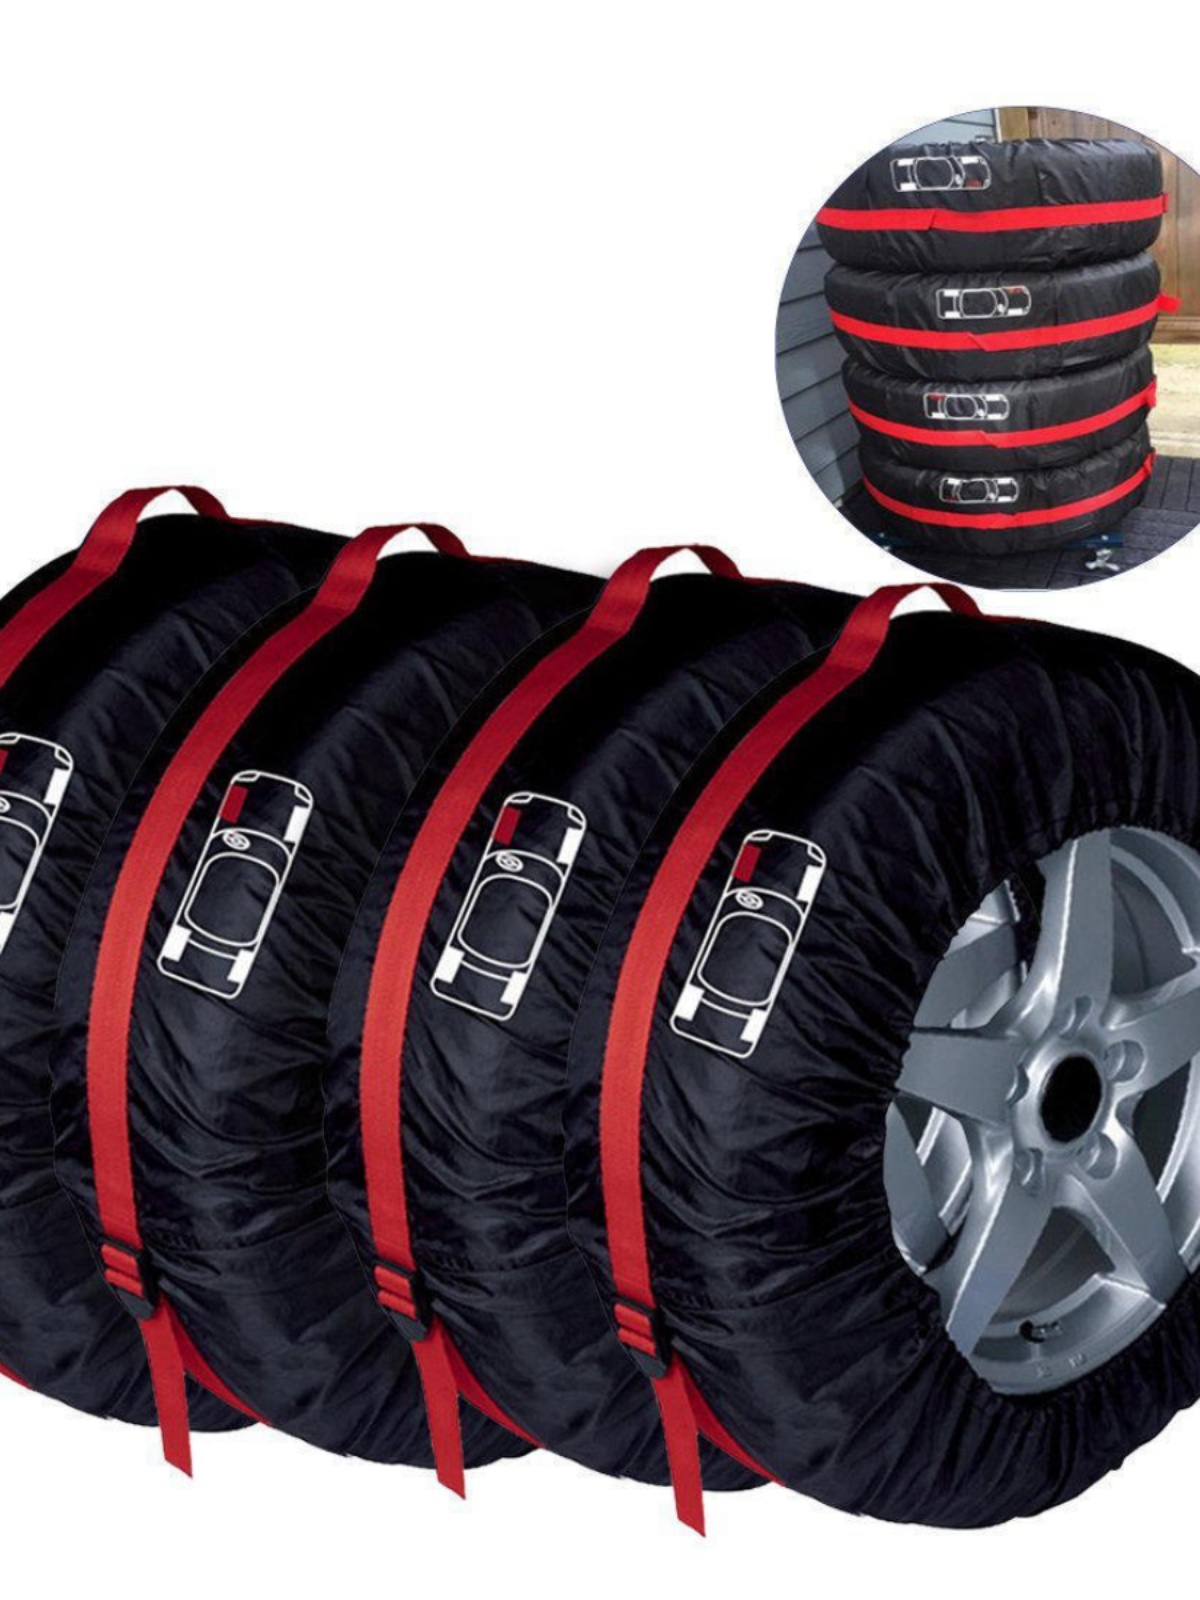 。汽车轮胎罩套轮胎收纳袋收藏袋包雪地胎备胎罩保护罩车型通用